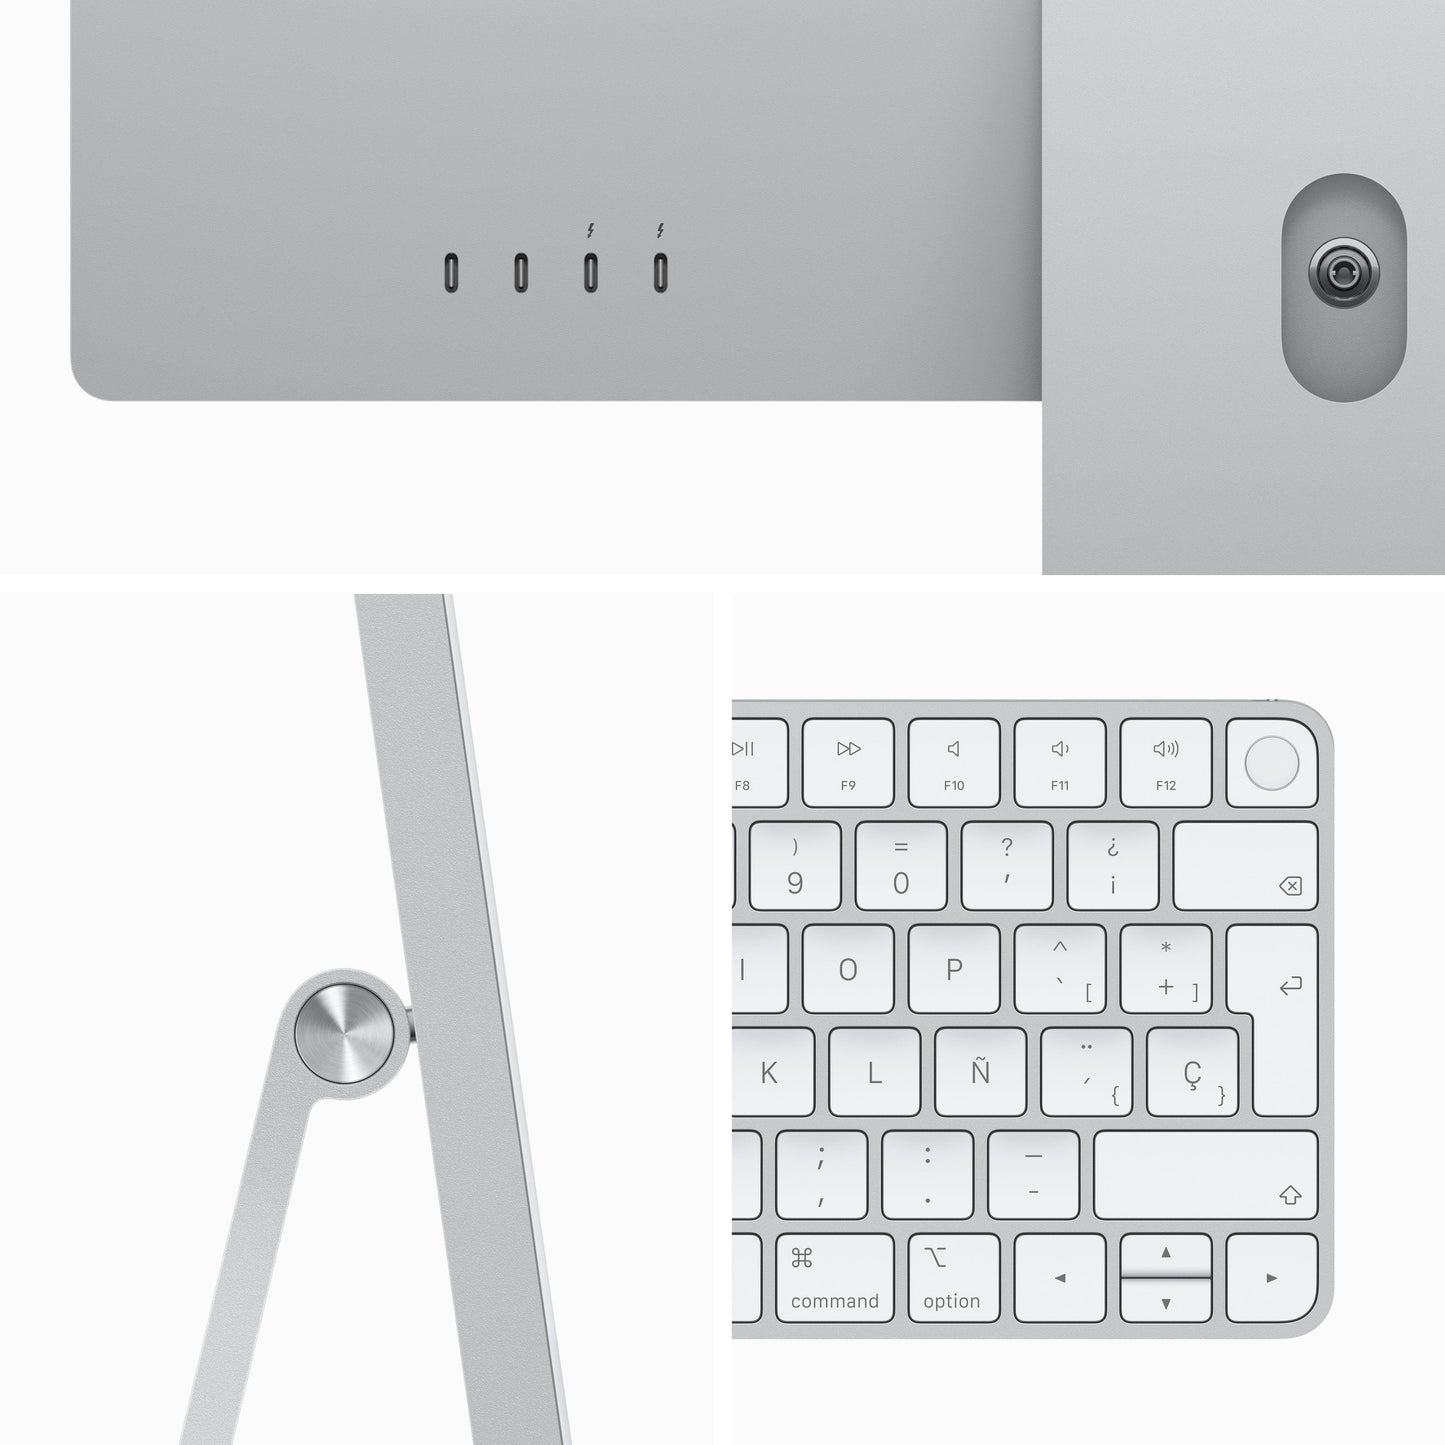 iMac con pantalla Retina 4,5K de 24 pulgadas: Chip M3 de Apple con CPU de ocho núcleos y GPU de diez núcleos, 256 GB SSD - Plata